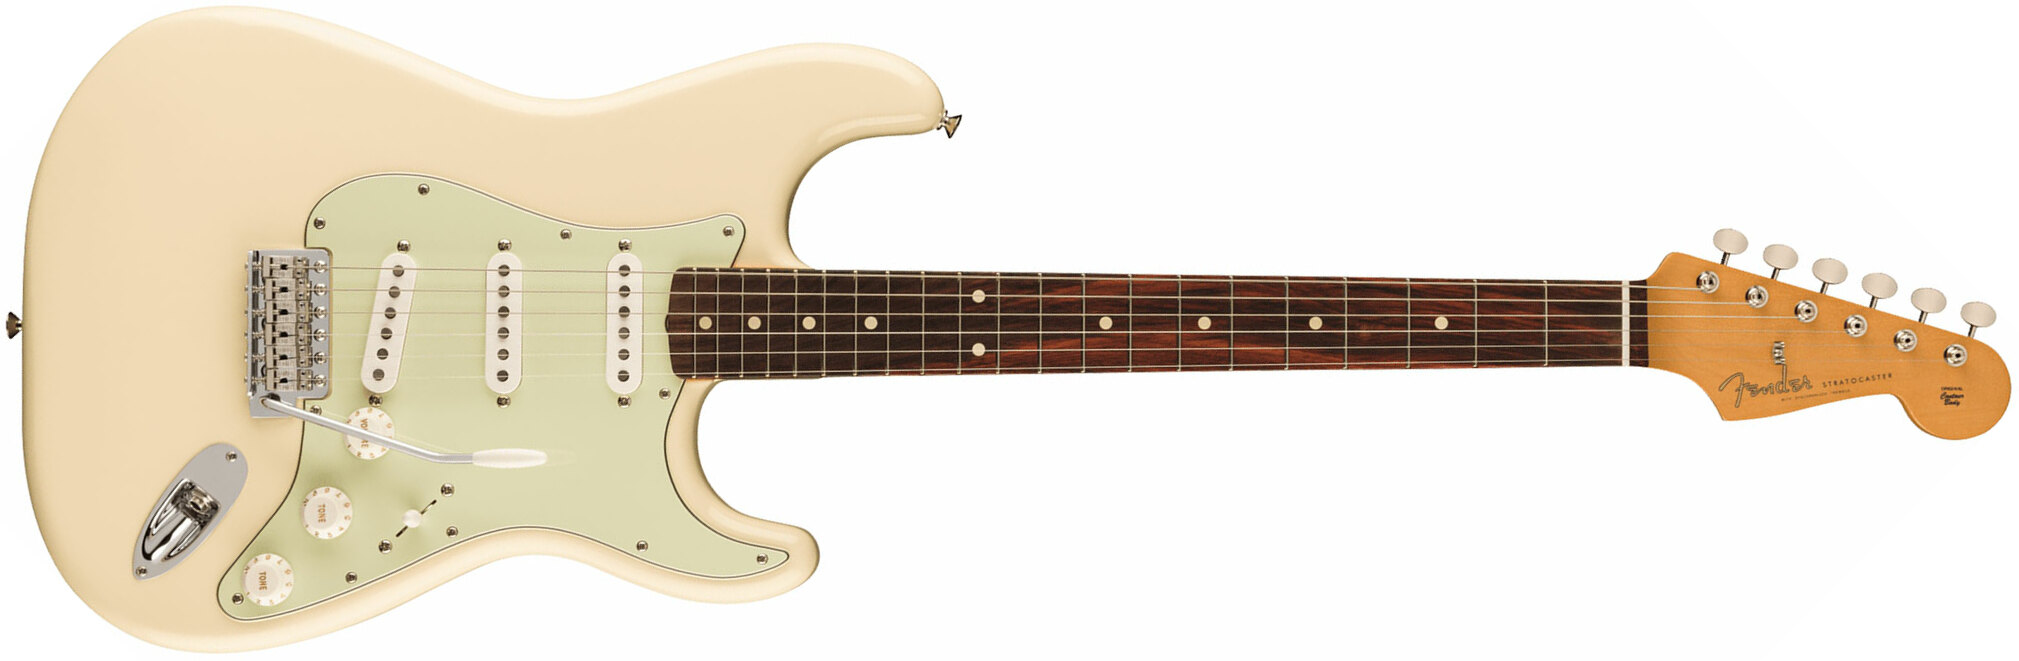 Fender Strat 60s Vintera 2 Mex 3s Trem Rw - Olympic White - Elektrische gitaar in Str-vorm - Main picture